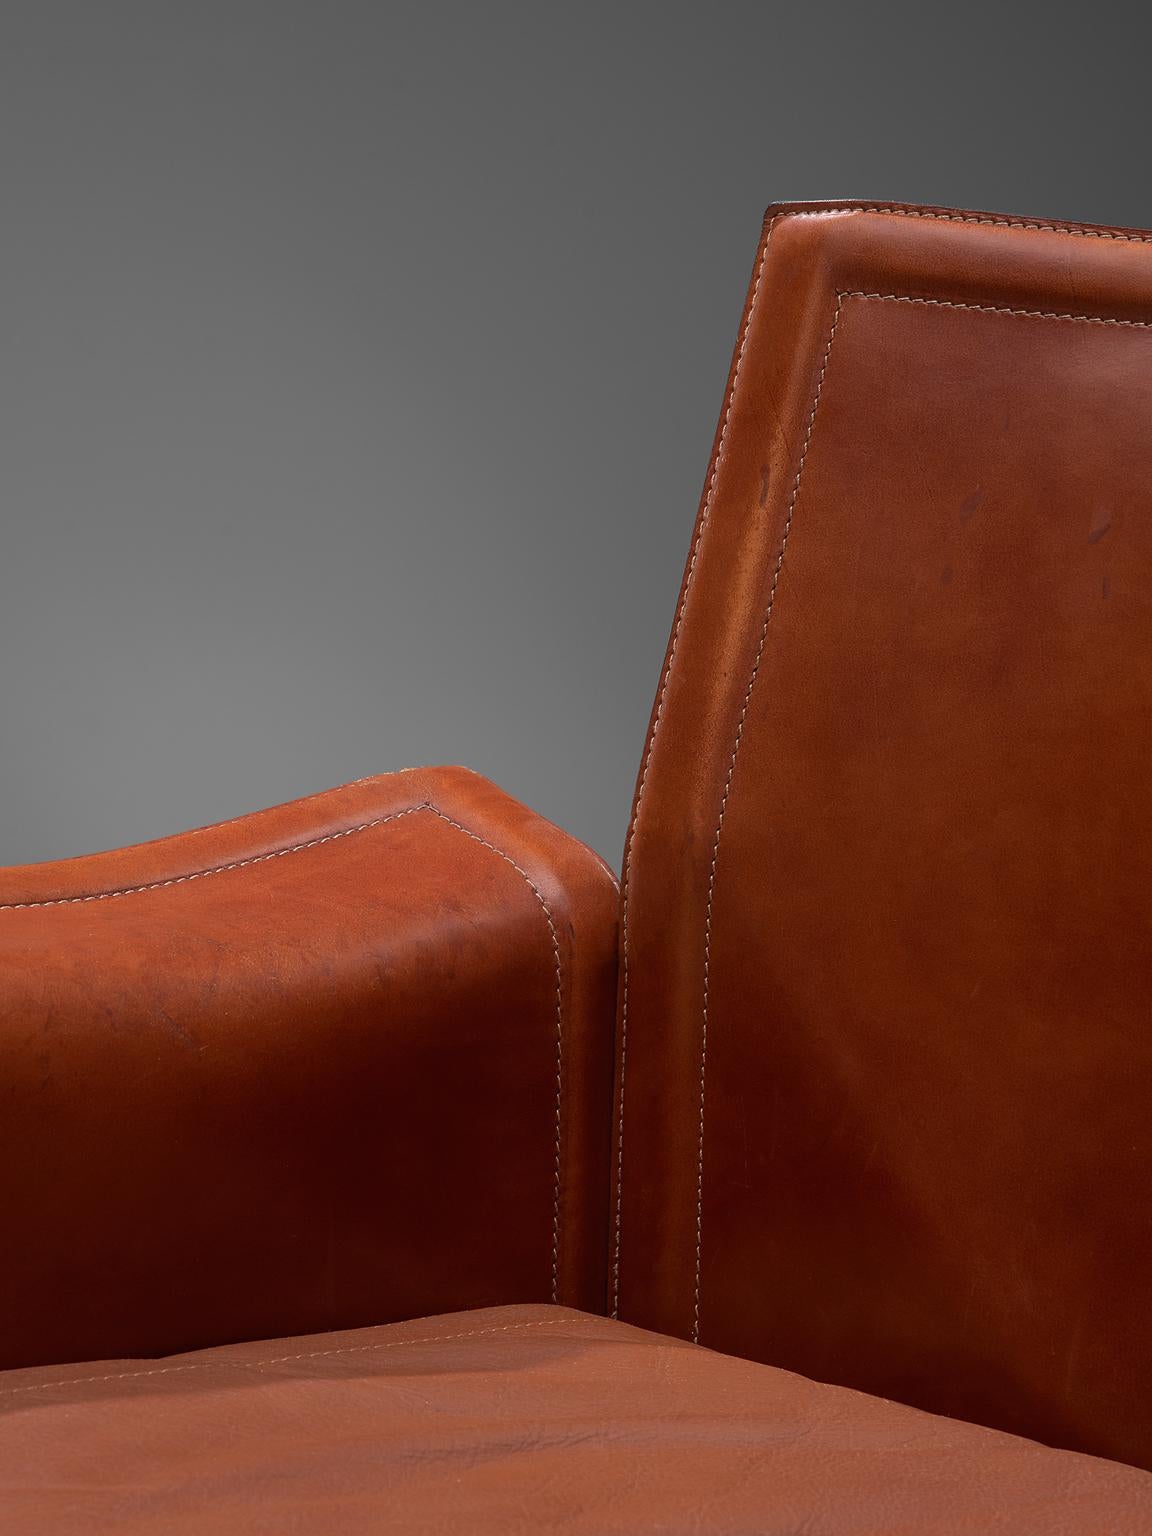 Tito Agnoli 'Korium' Sofa in Cognac Leather 1